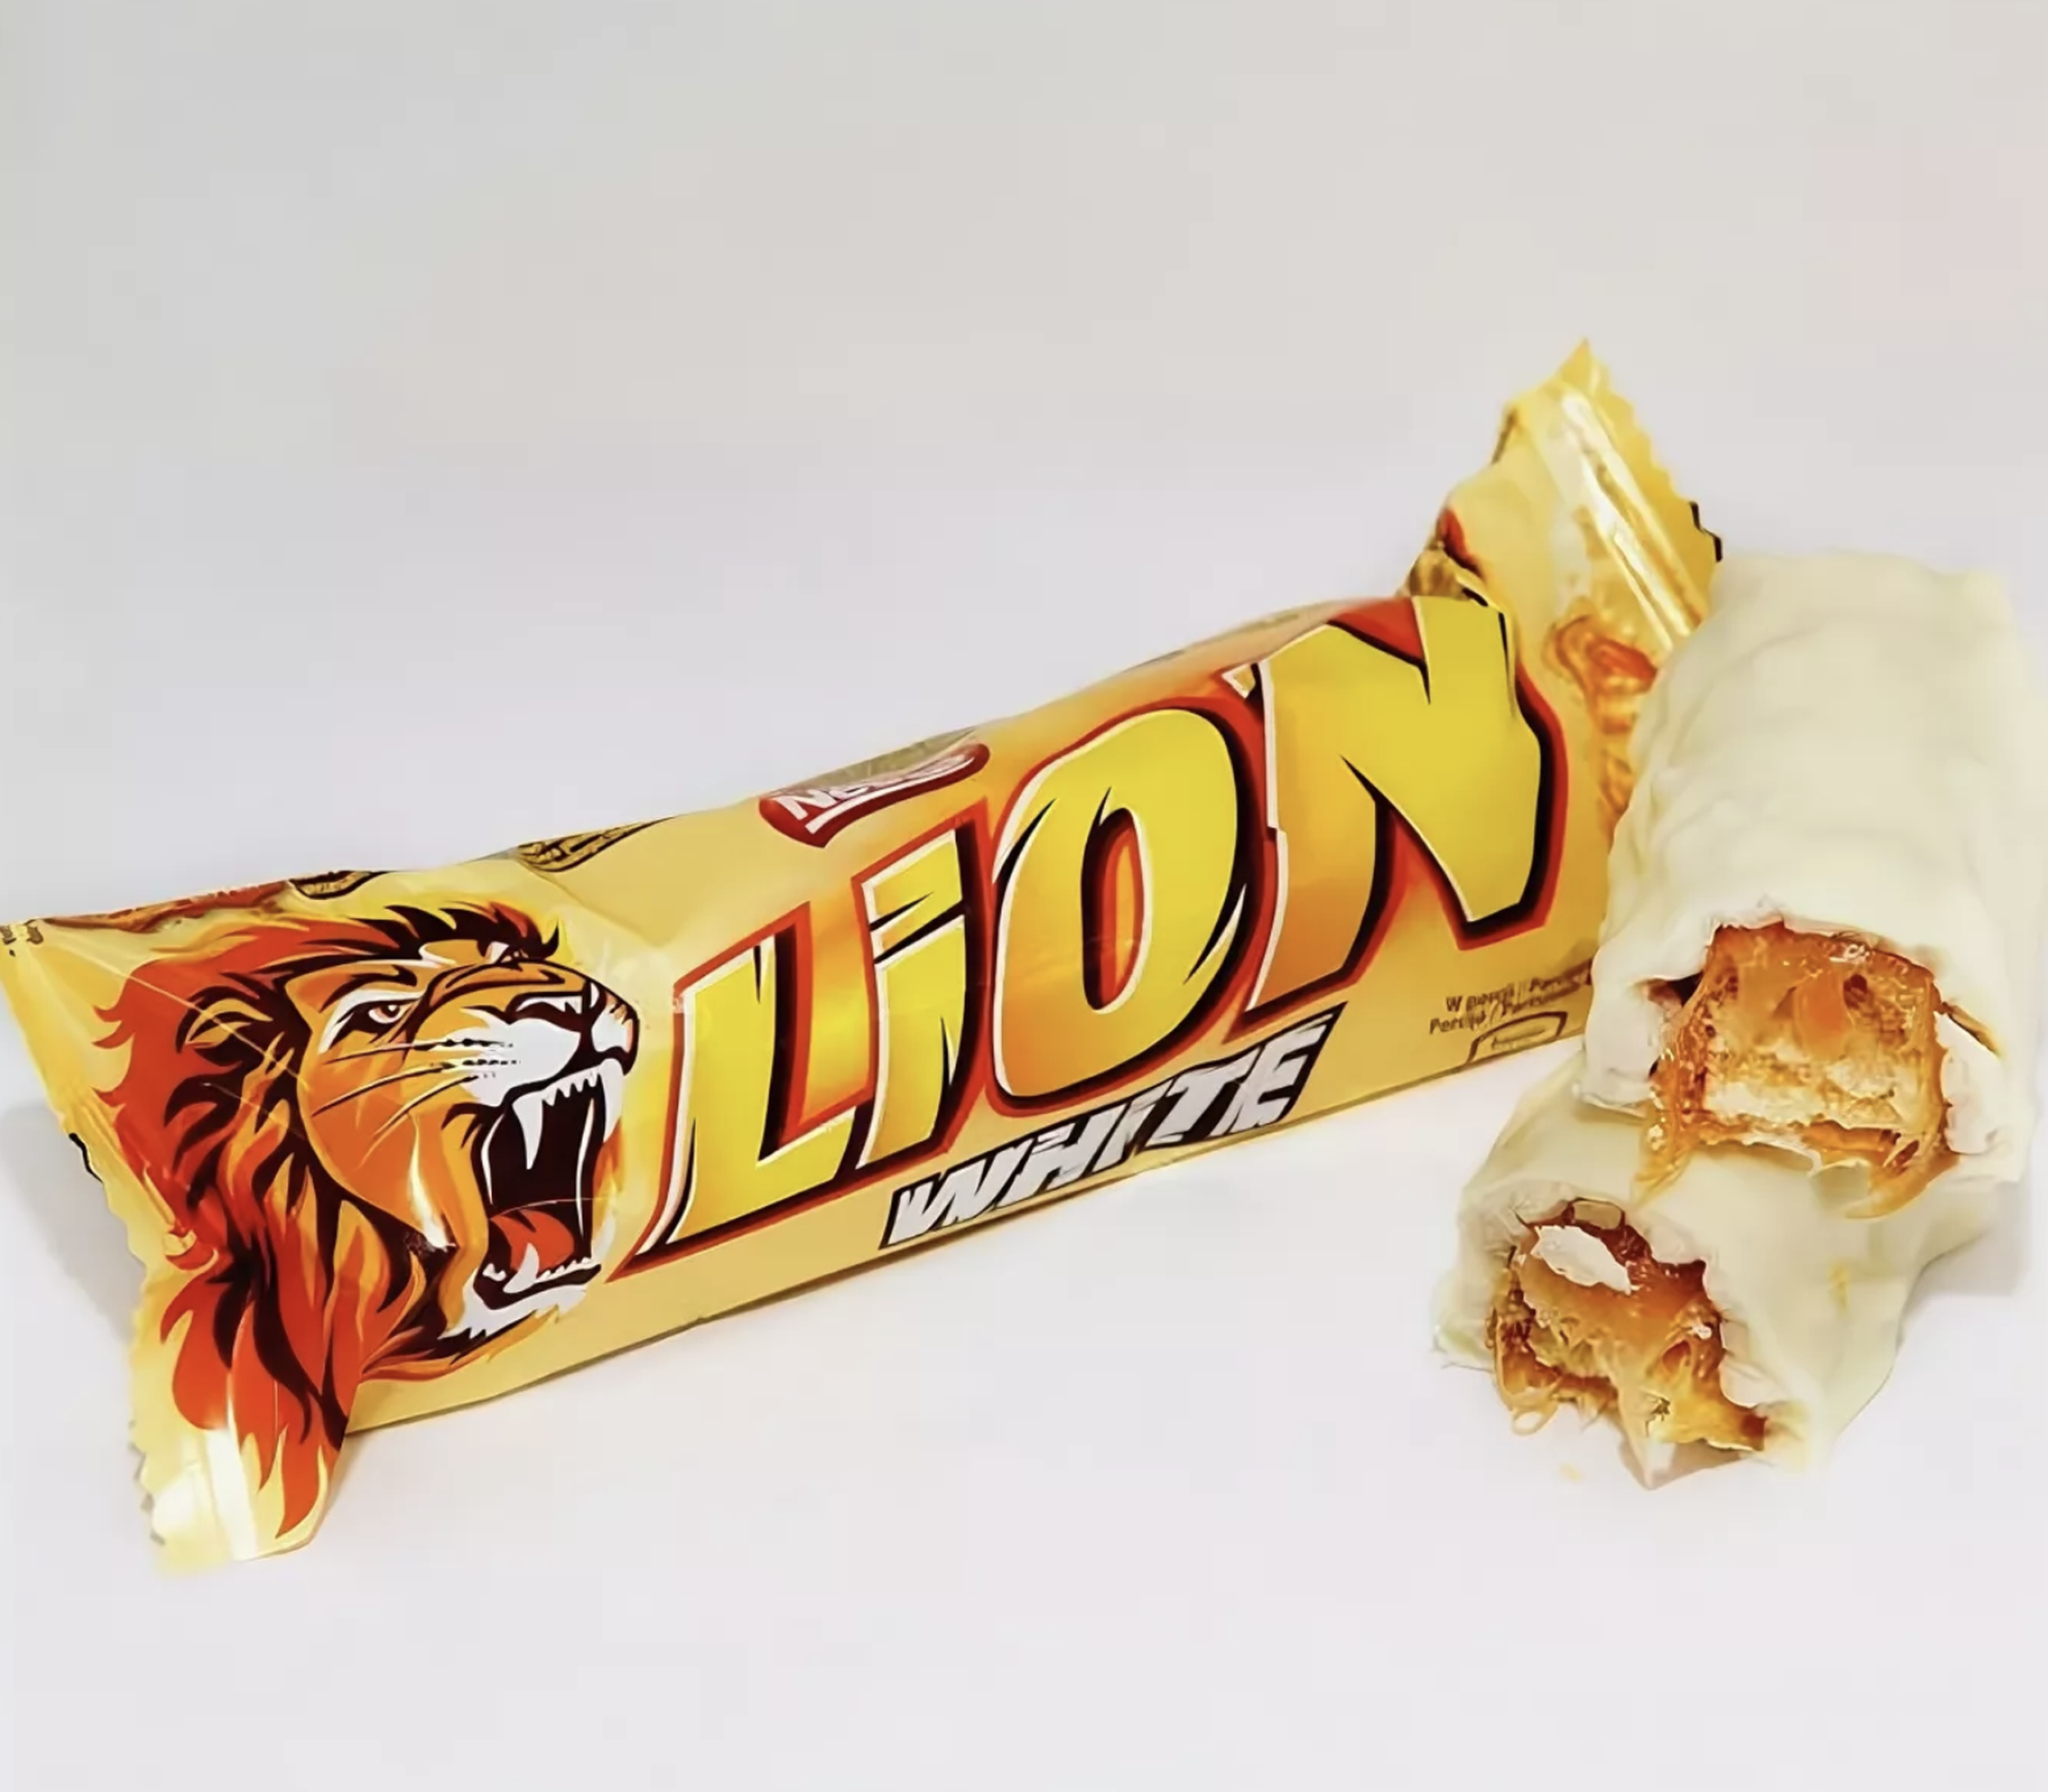 Батончики белый шоколад. Lion White батончик 42гр. Шоколадный батончик Lion Standart Caramel 42г. Lion (Nestle) White ШОК. Батончик 42г 40шт. Лайон / Lion шоколадный батончик.